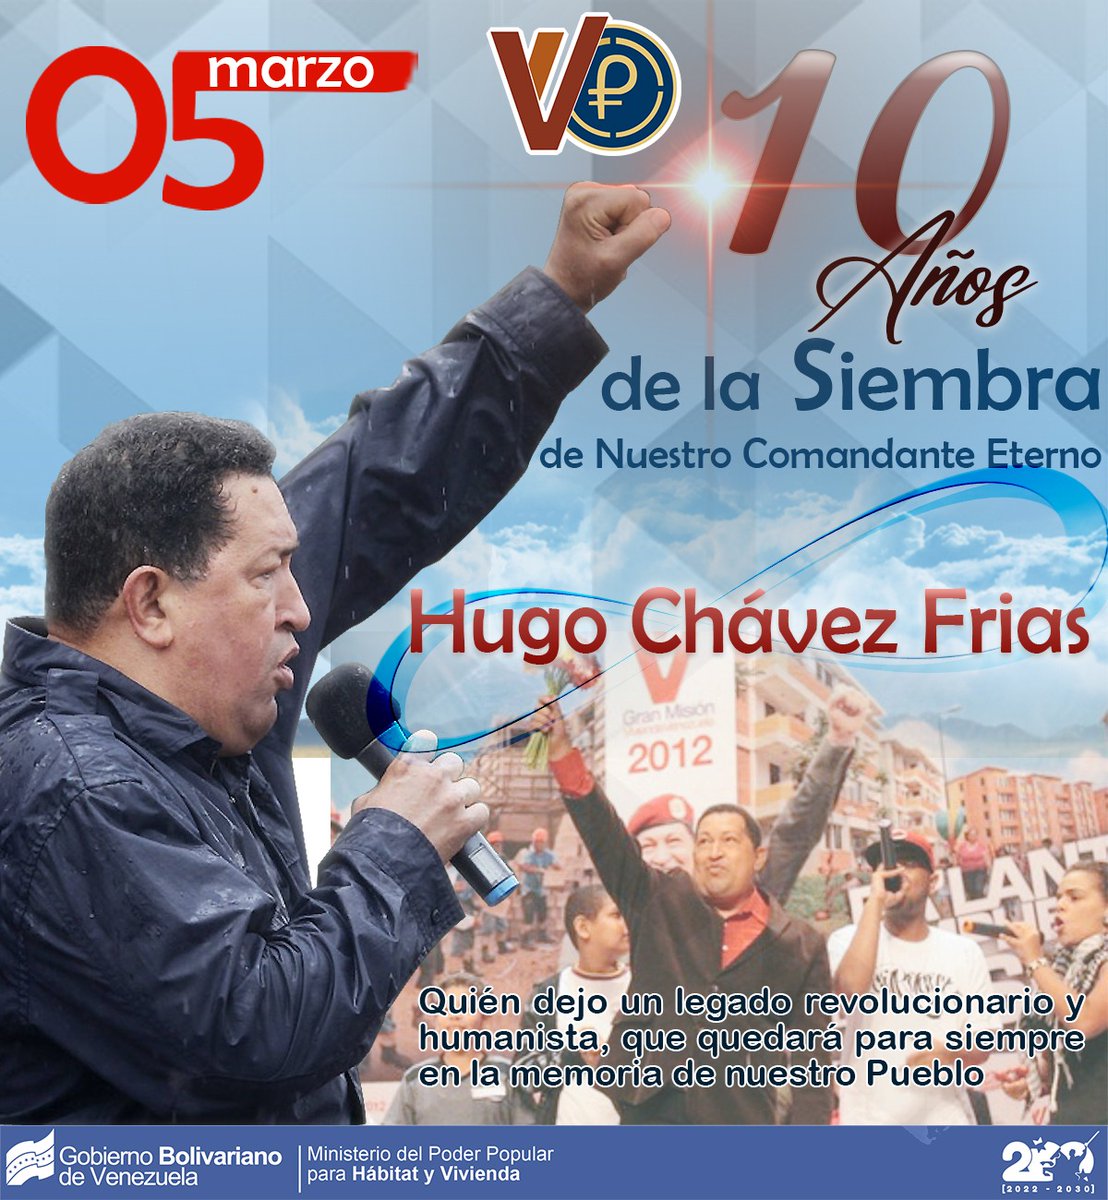 Cmdte. Eterno, Hugo #Chávez, #hoy se cumplen 10 años desde que partió a la eternidad para hacerse eterno en el corazón de cada venezolano, fundador de la #RevoluciónBolivariana y luchador por los oprimidos. Seguiremos tu legado, forjando la #Patria libre y soberana. #YoSoyChávez